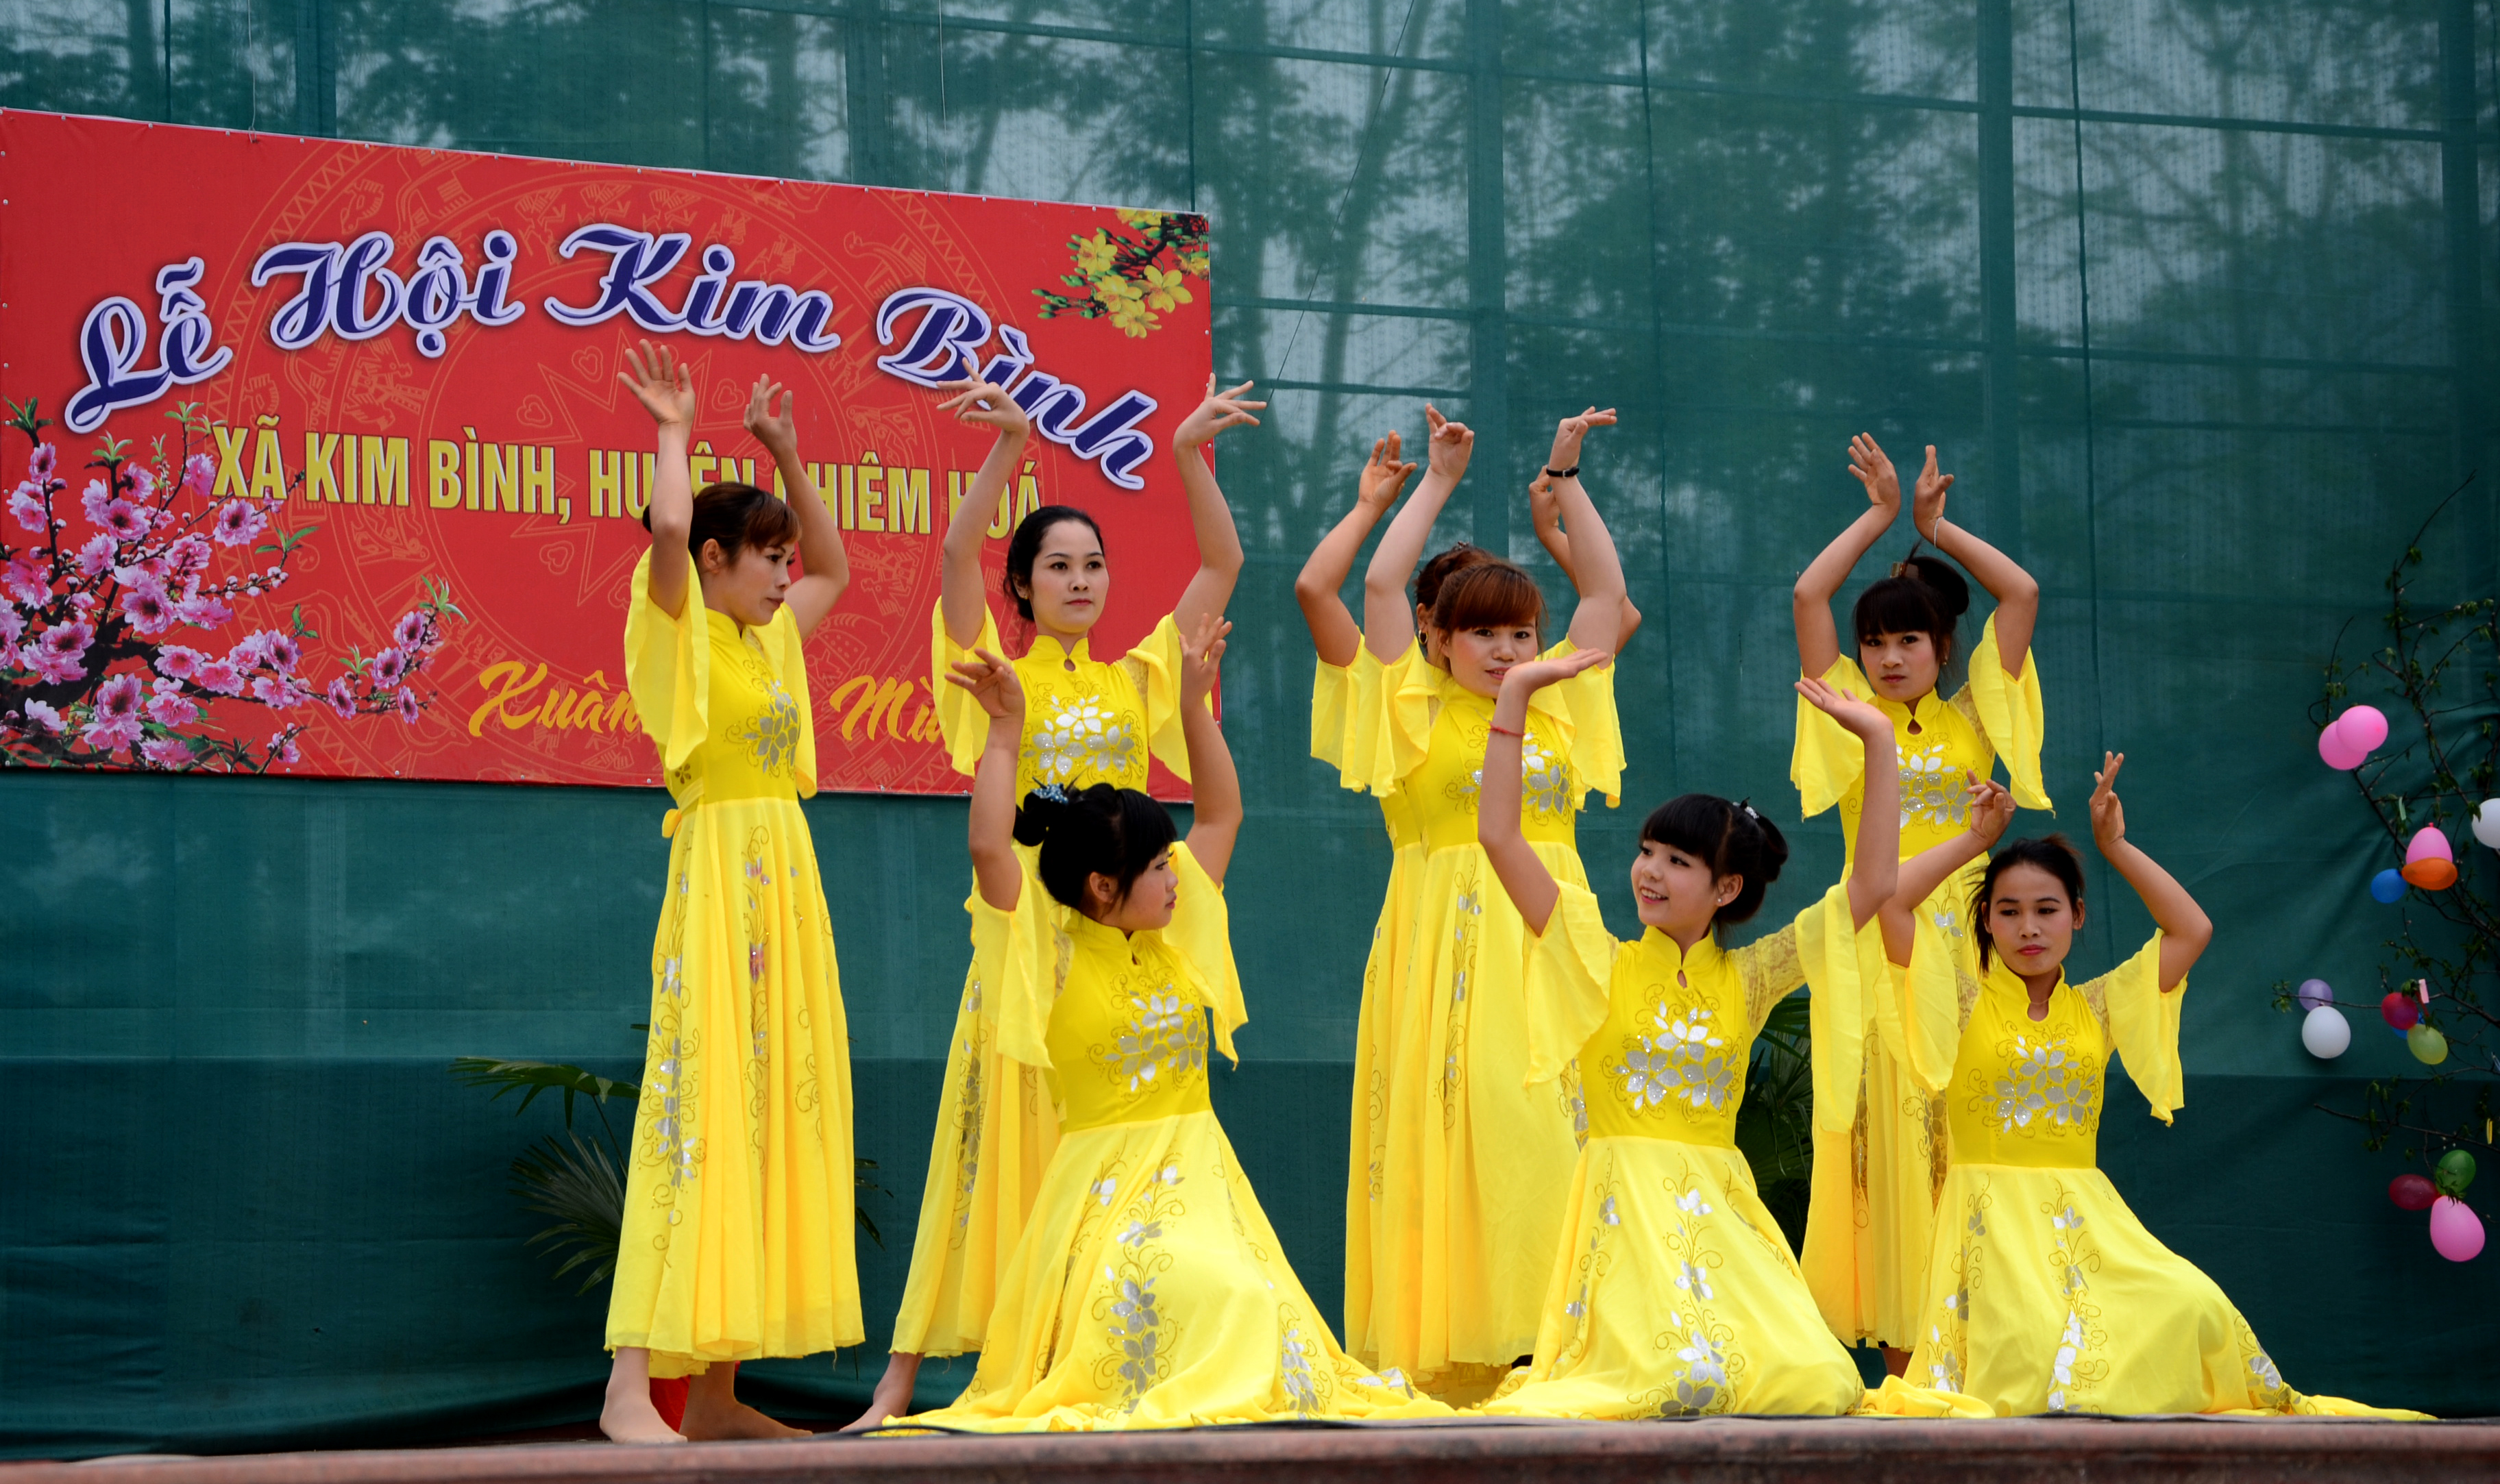 Người dân Kim Bình hôm nay rất coi trọng đời sống văn hóa tinh thần